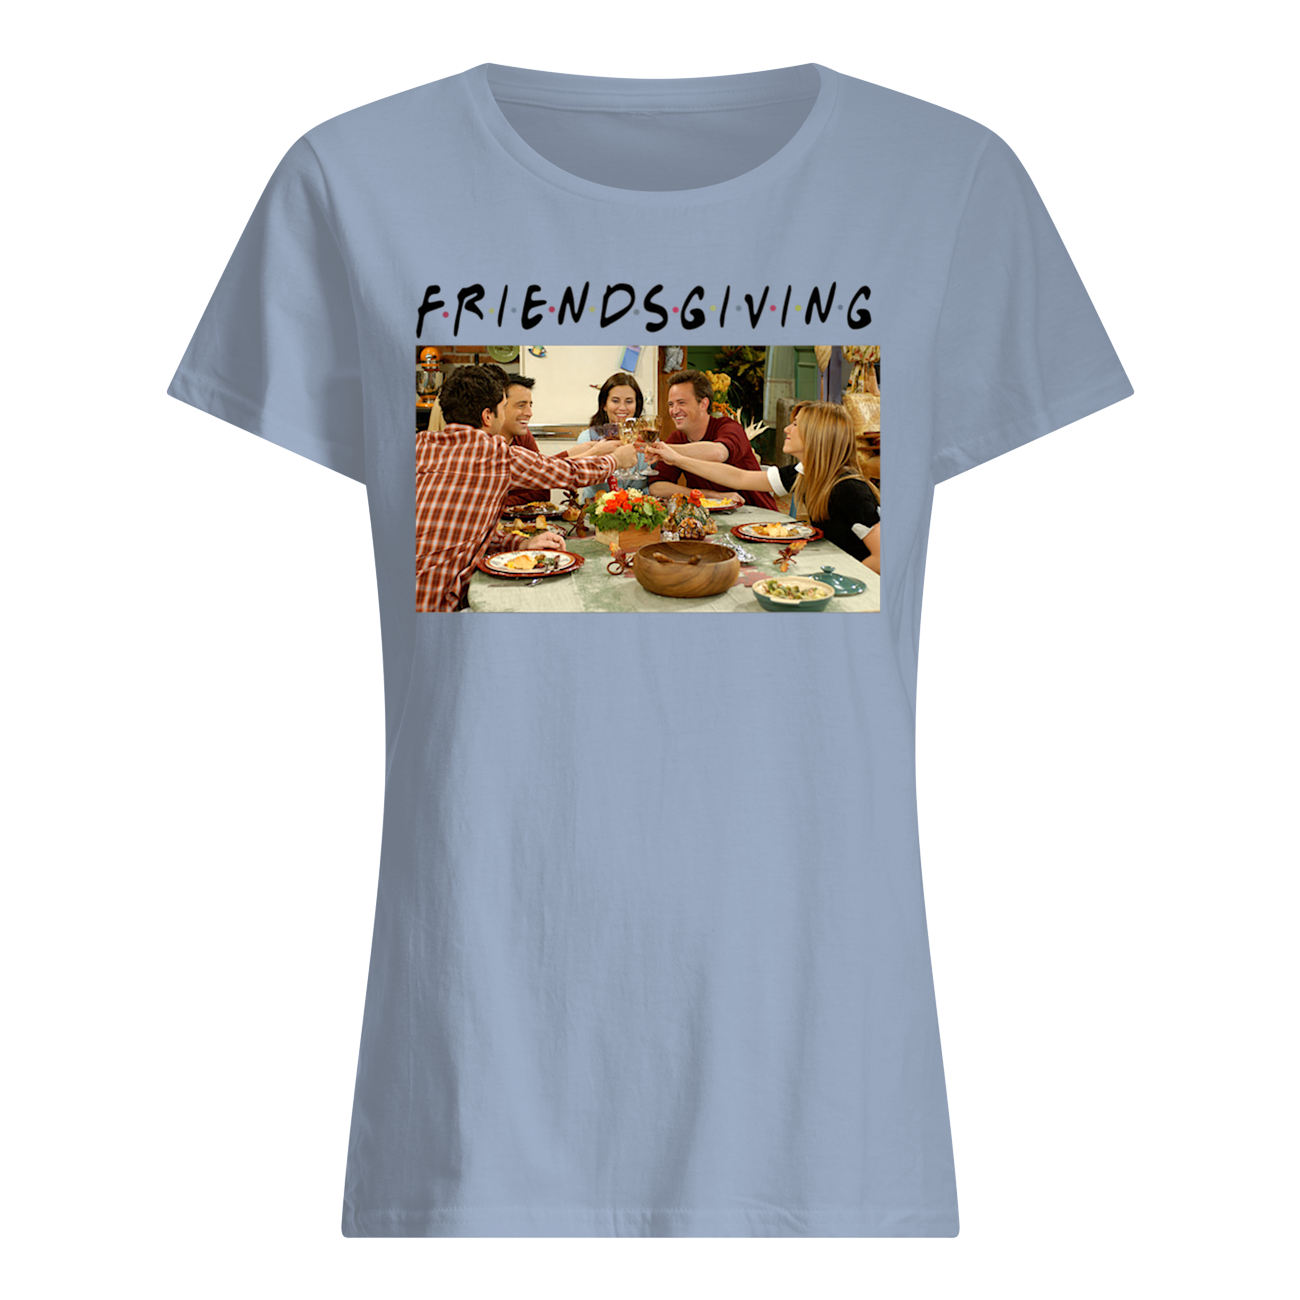 Friendsgiving friends tv show thanksgiving womens shirt